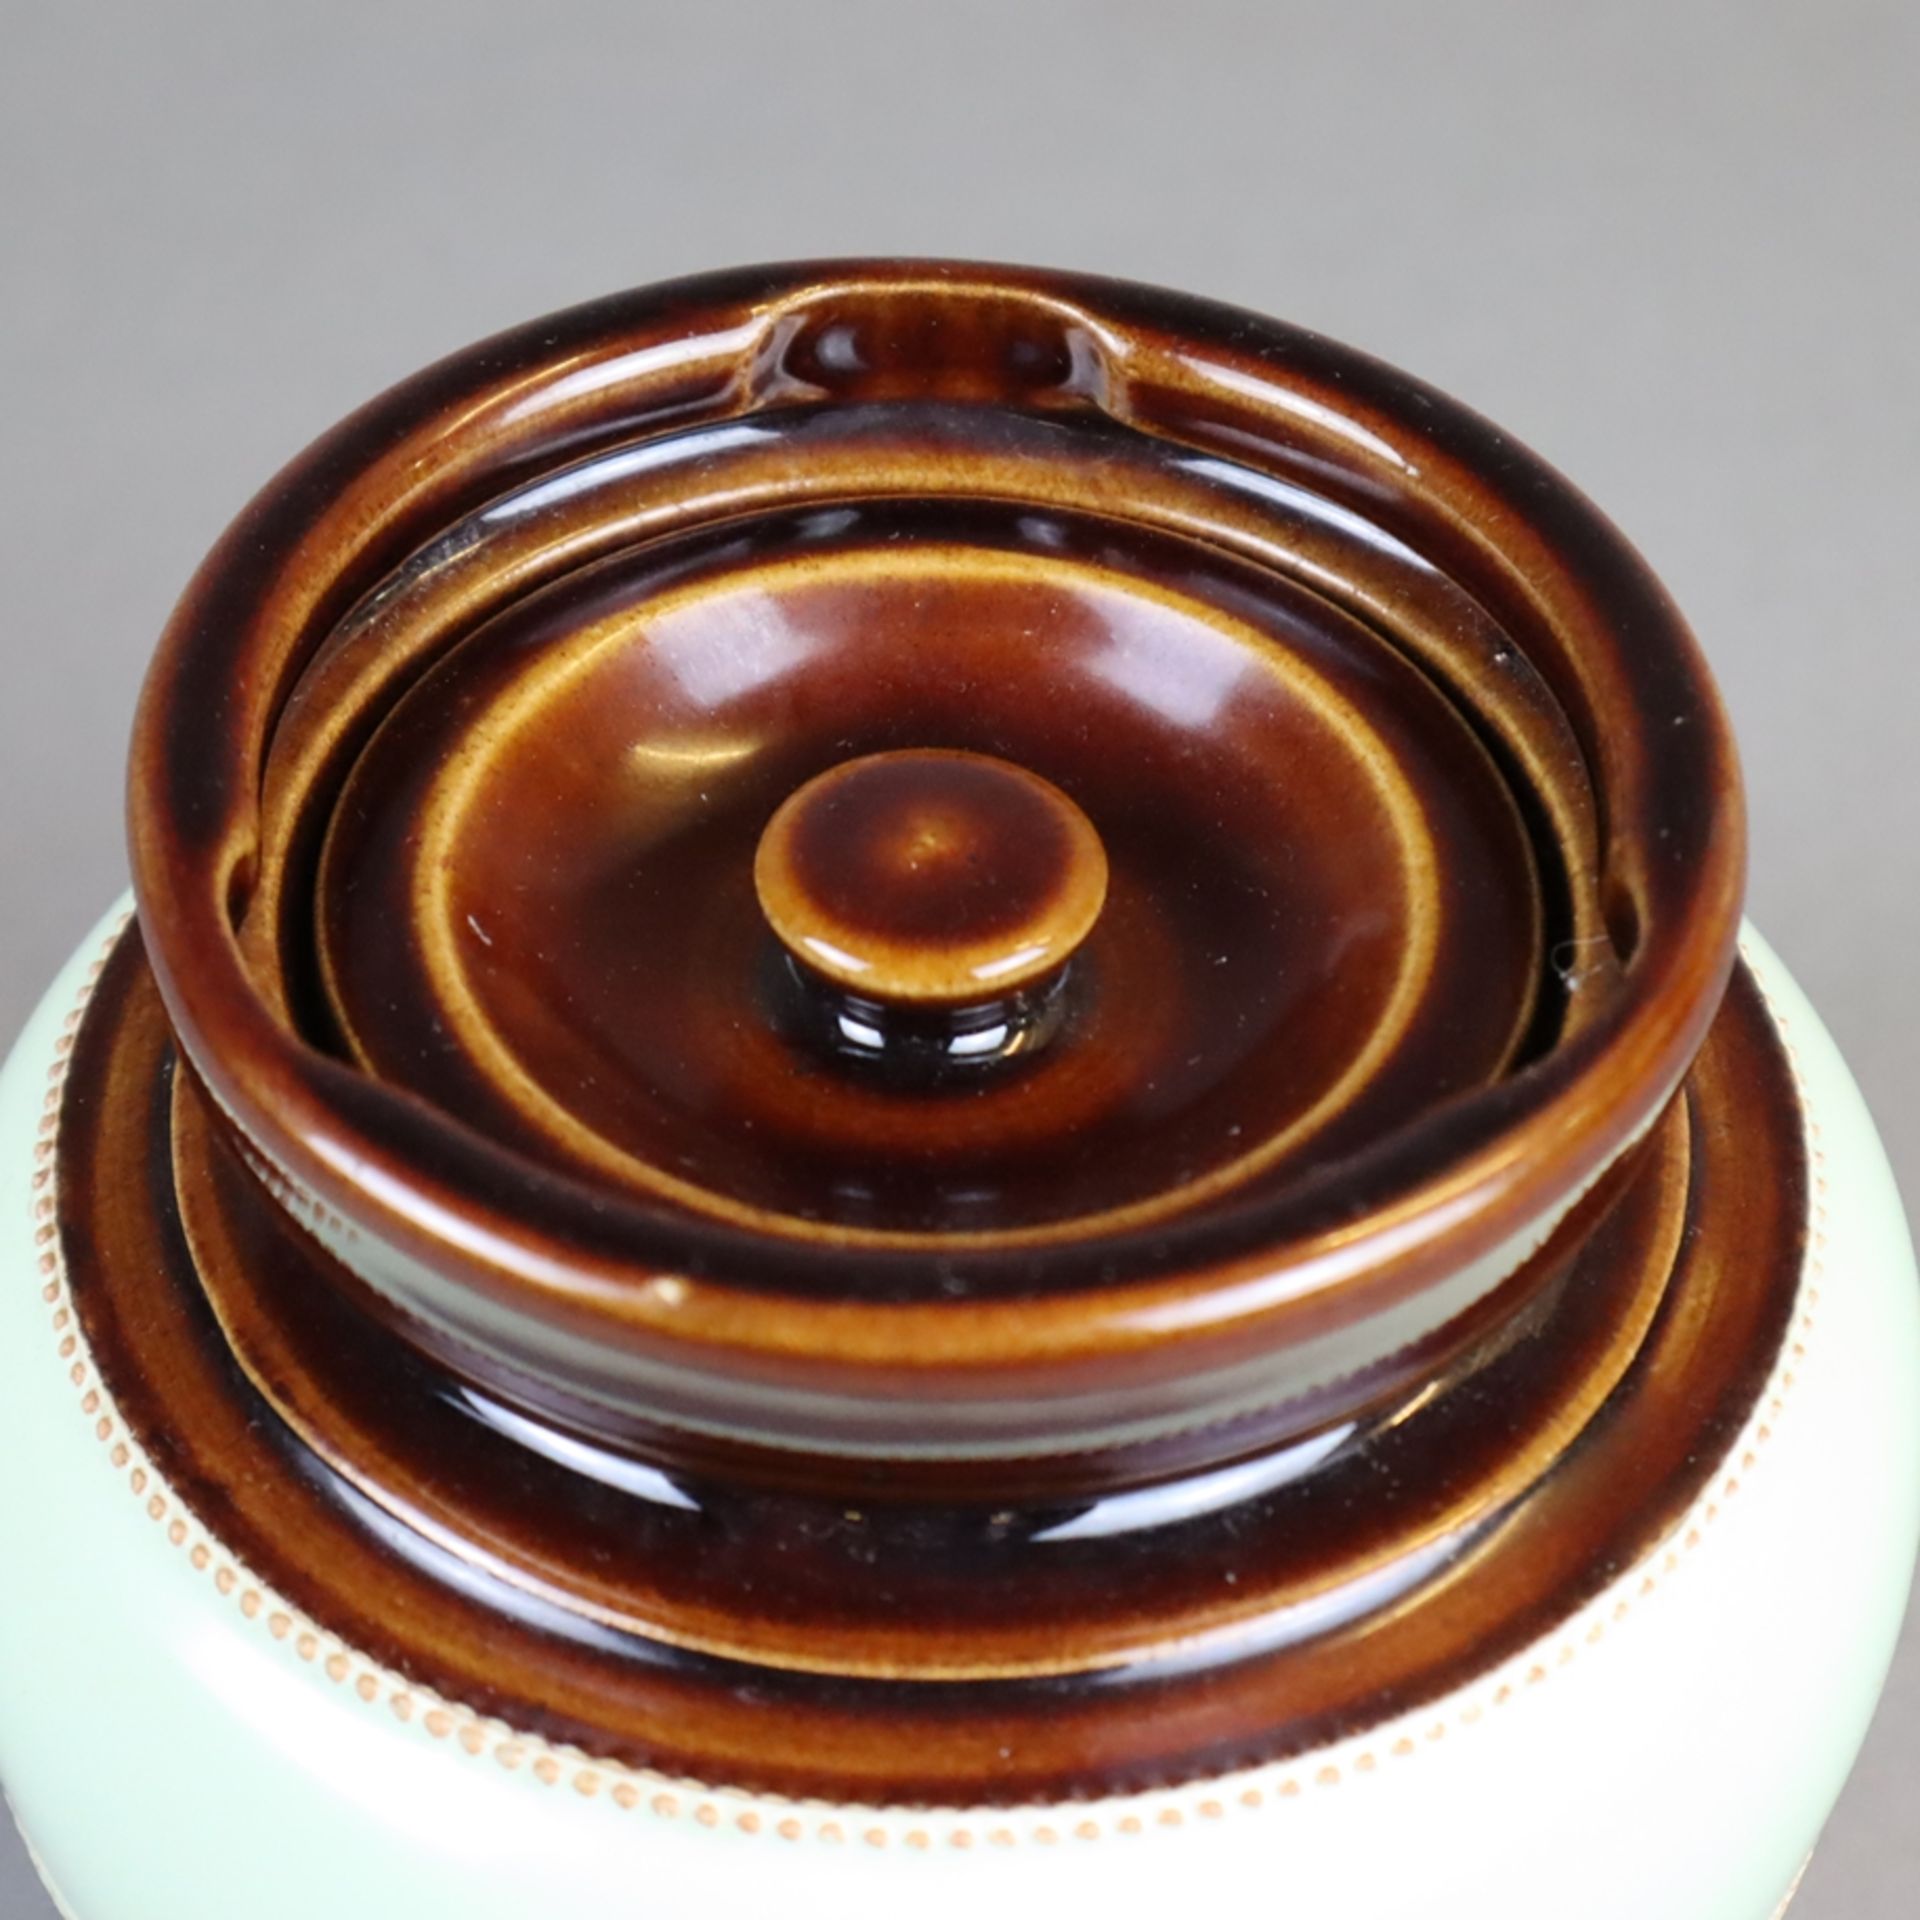 Keramik-Tabaktopf - sandfarbener Scherben, Glasur in Braun und Lindgrün, gebauchte Wandung auf zurü - Bild 2 aus 5